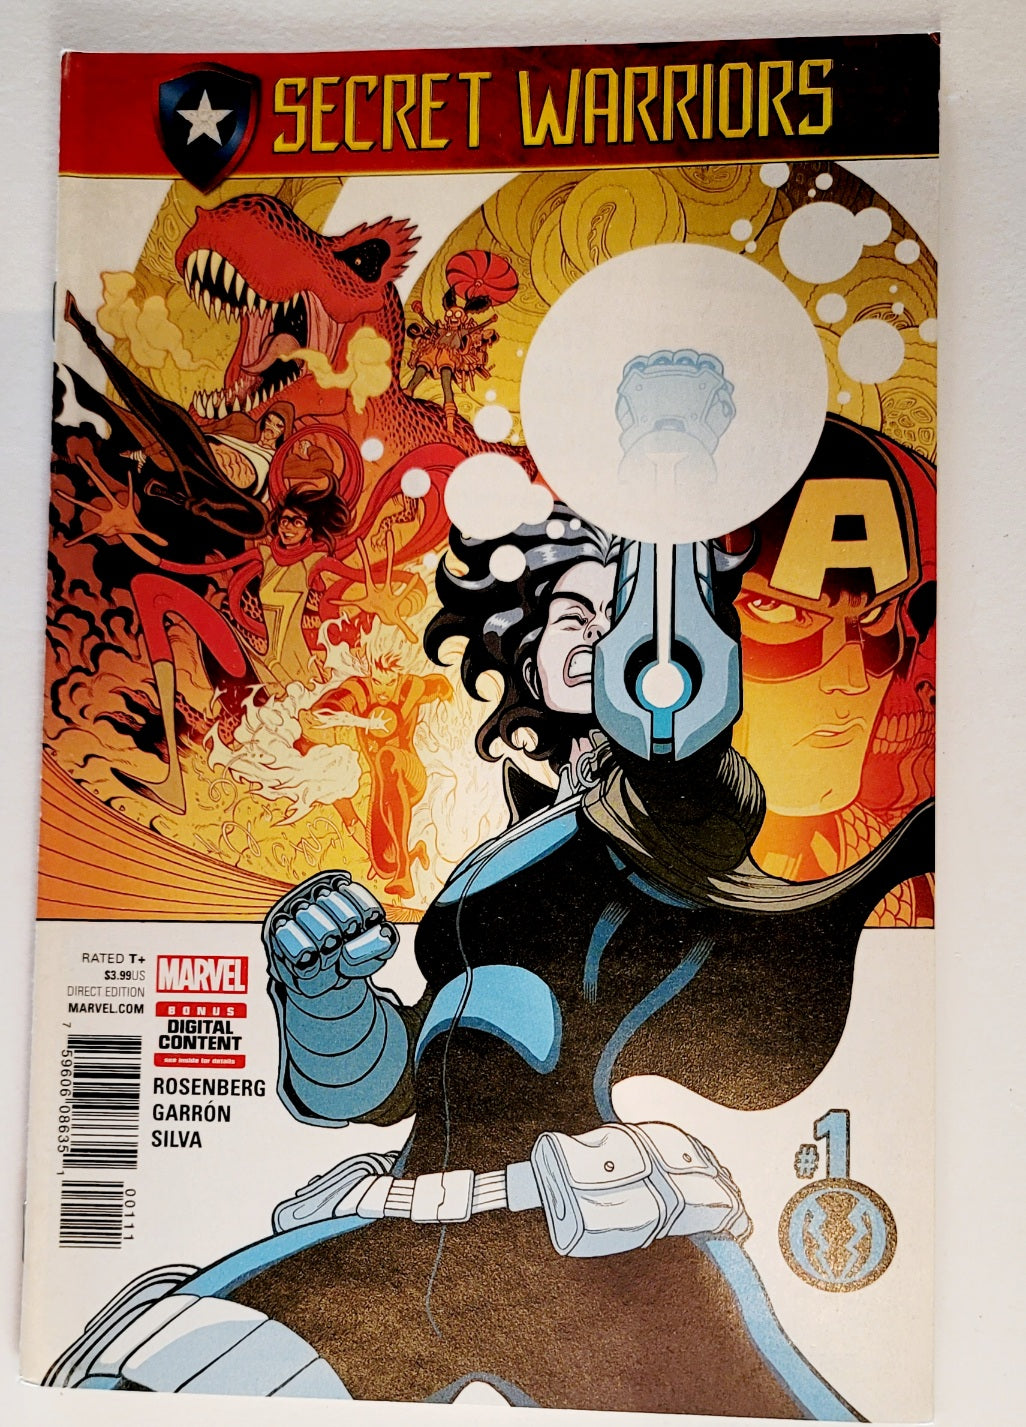 Secret Warriors #1 Issue Marvel Comic Book Bonus Digital Content